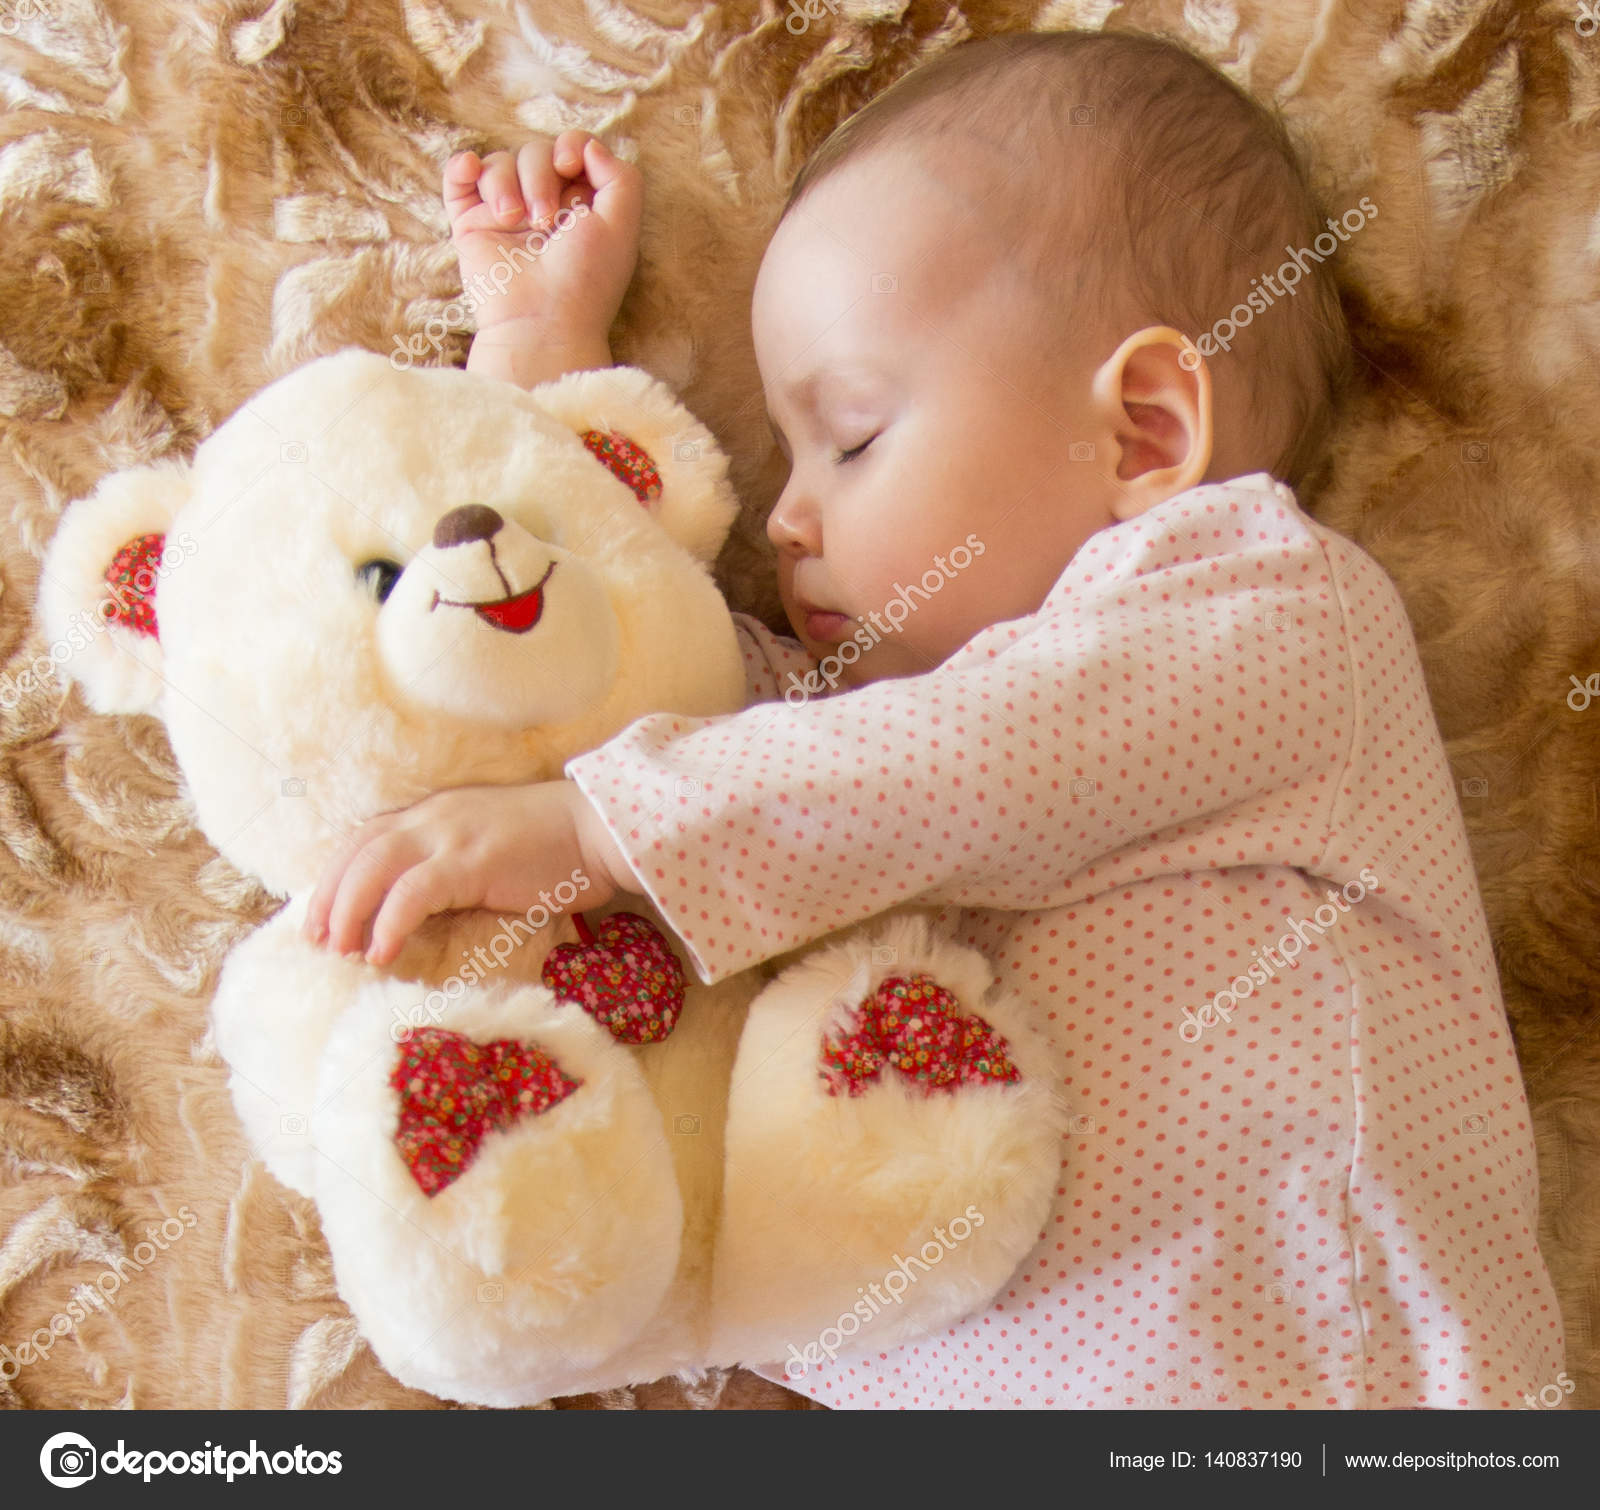 baby with teddy bear